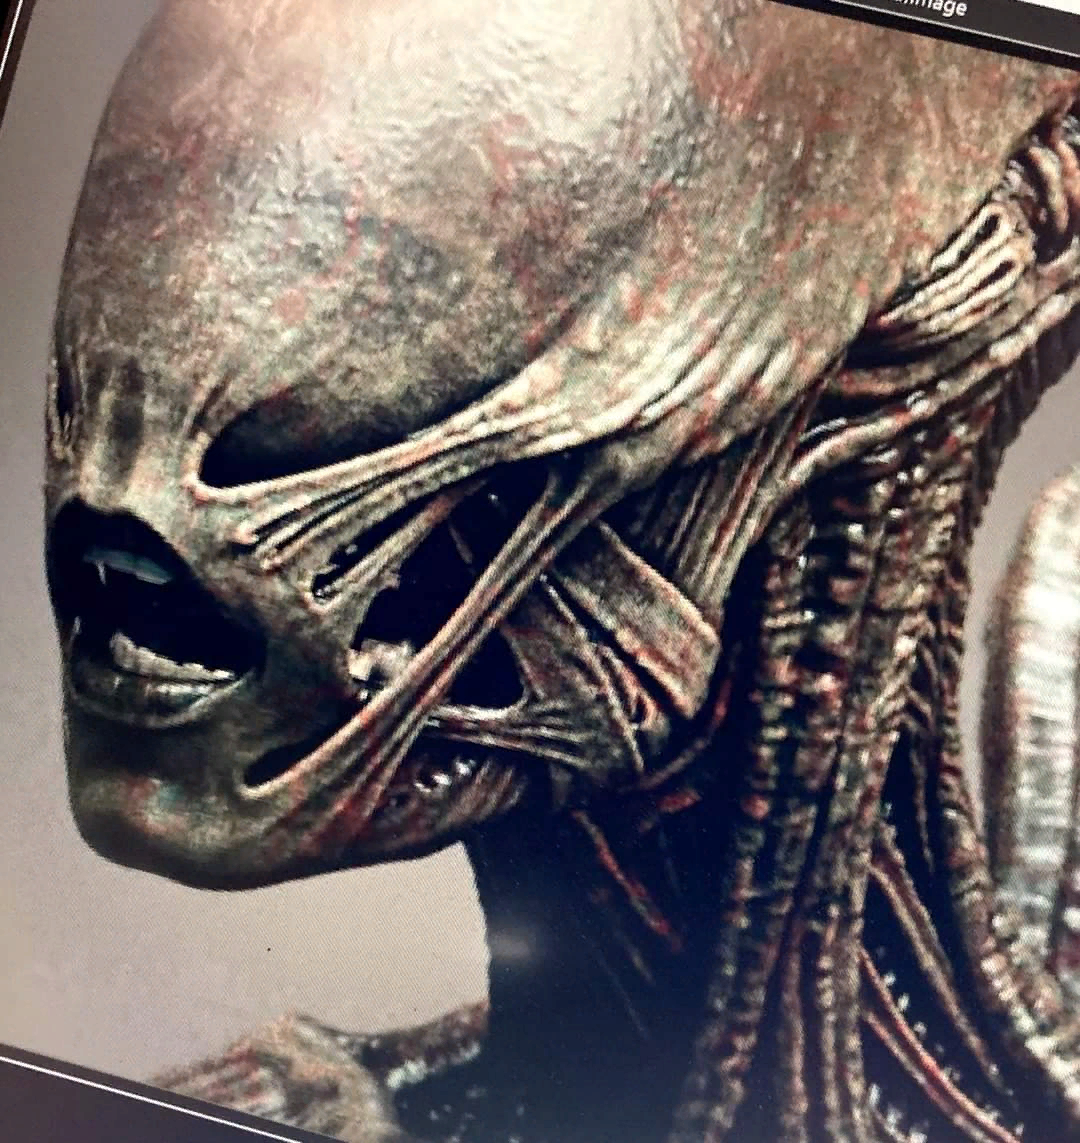 Появилась КсеноморфаЧеловека из сериала Alien, потенциальная концепция гибрида.